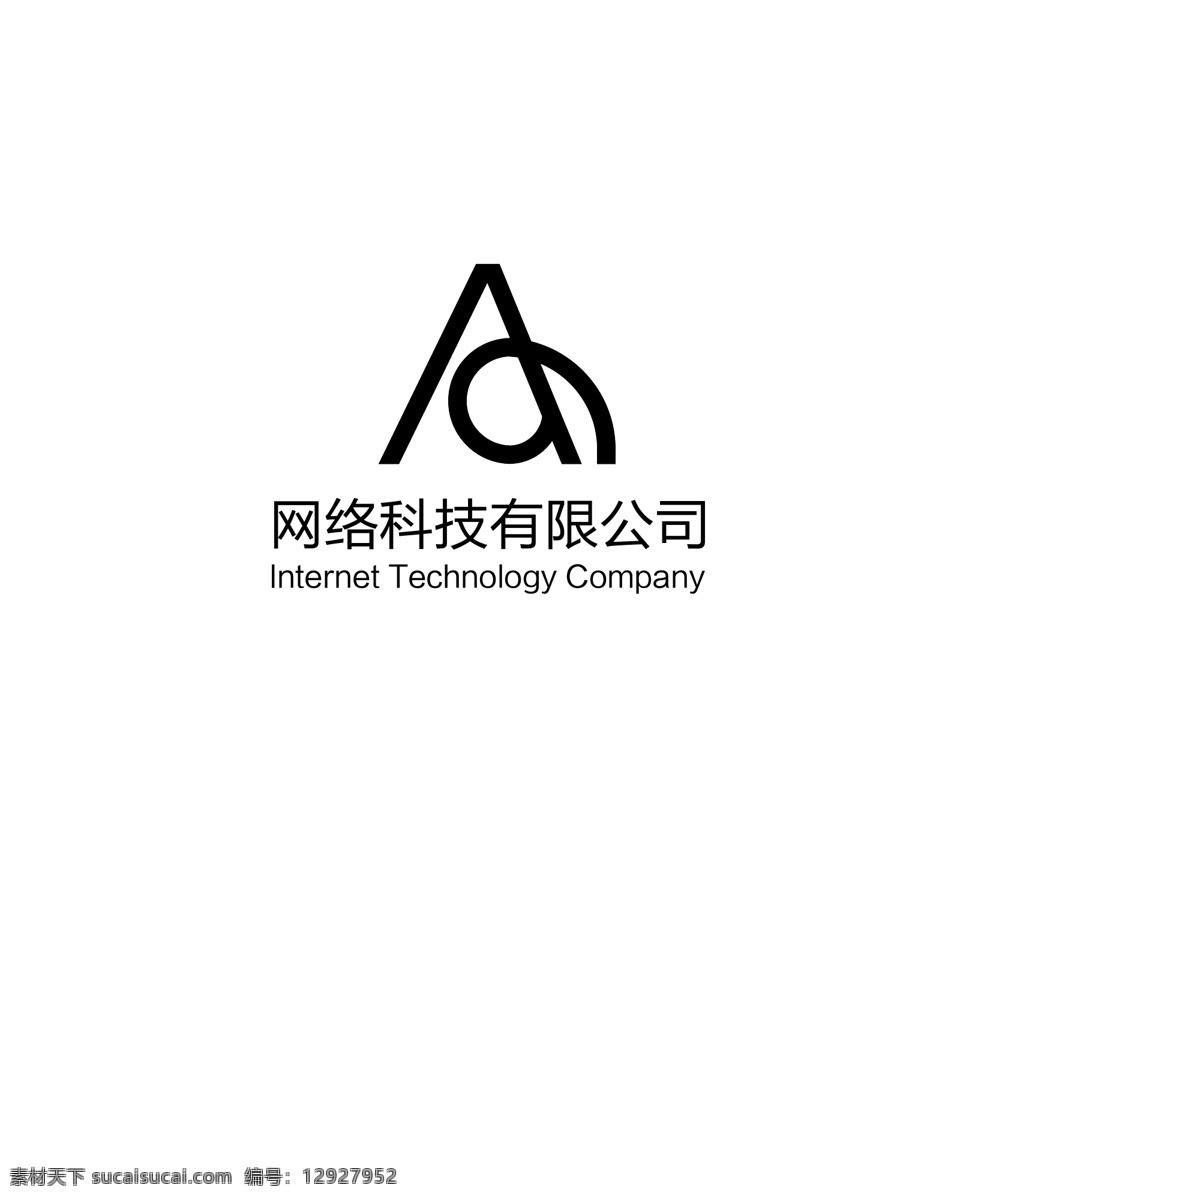 黑色 a 字母 logo 黑色logo 字母logo 高端 logo设计 网络 科技